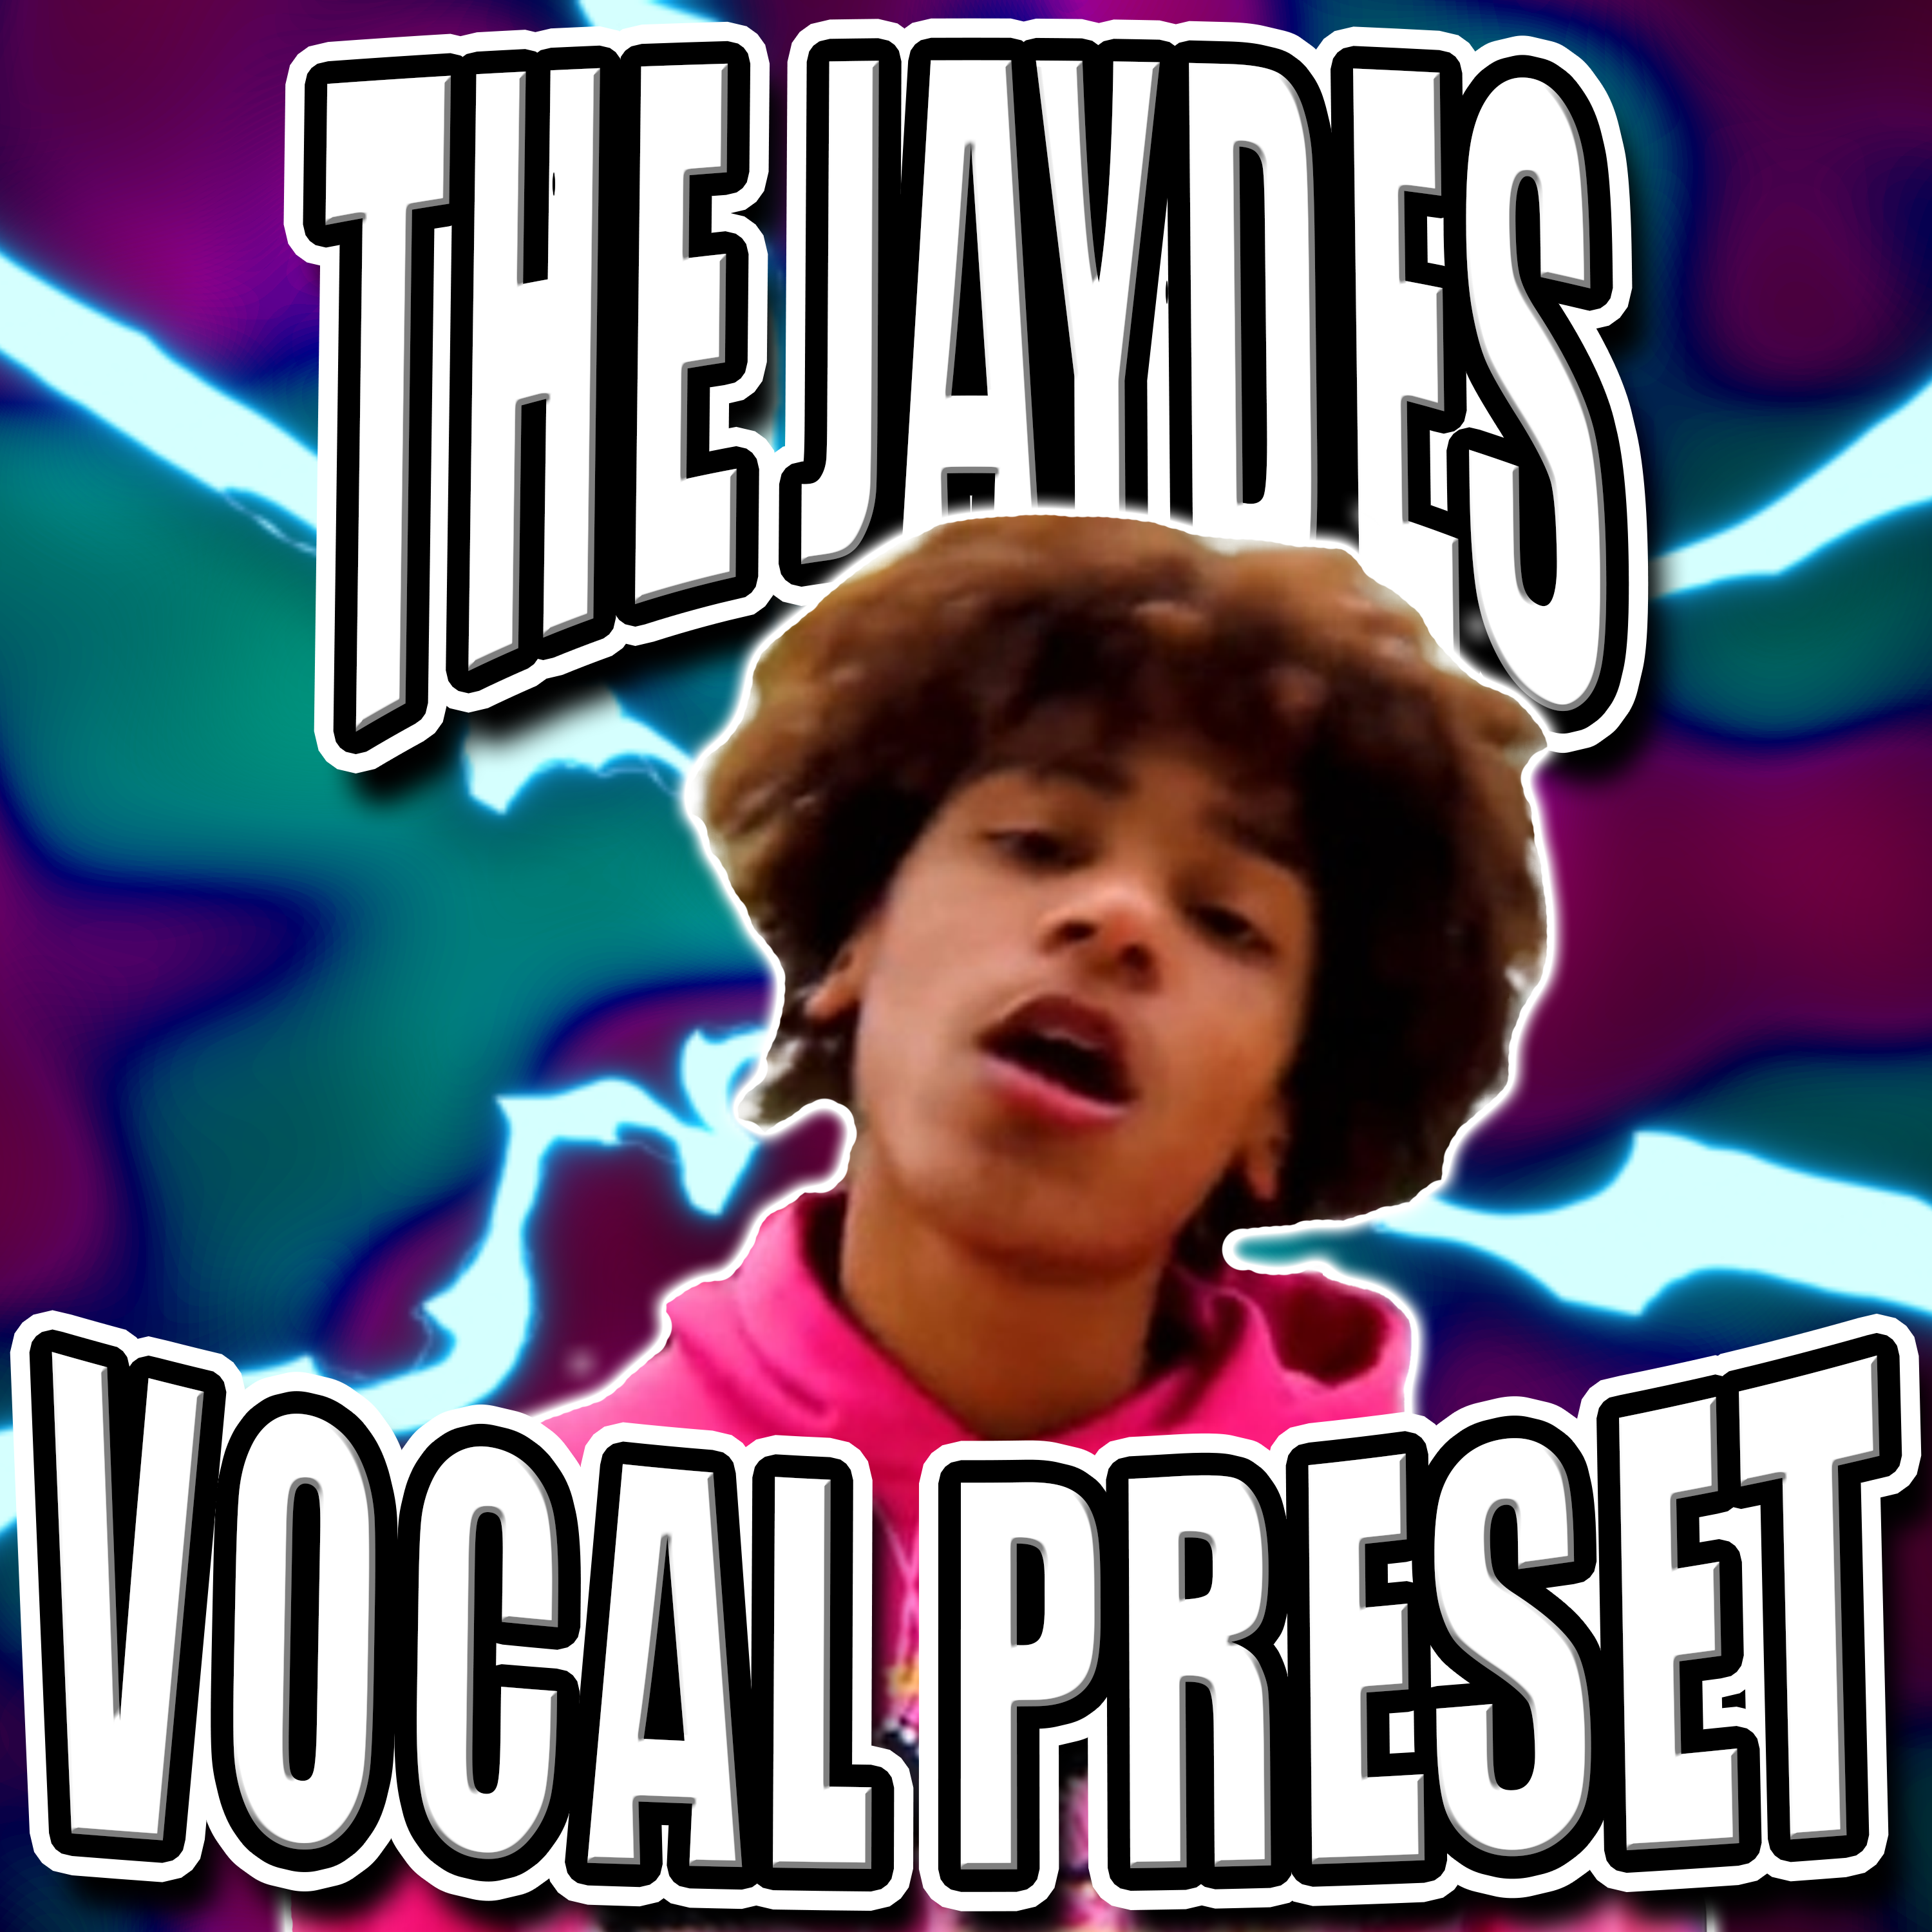 Jaydes Vocal Preset